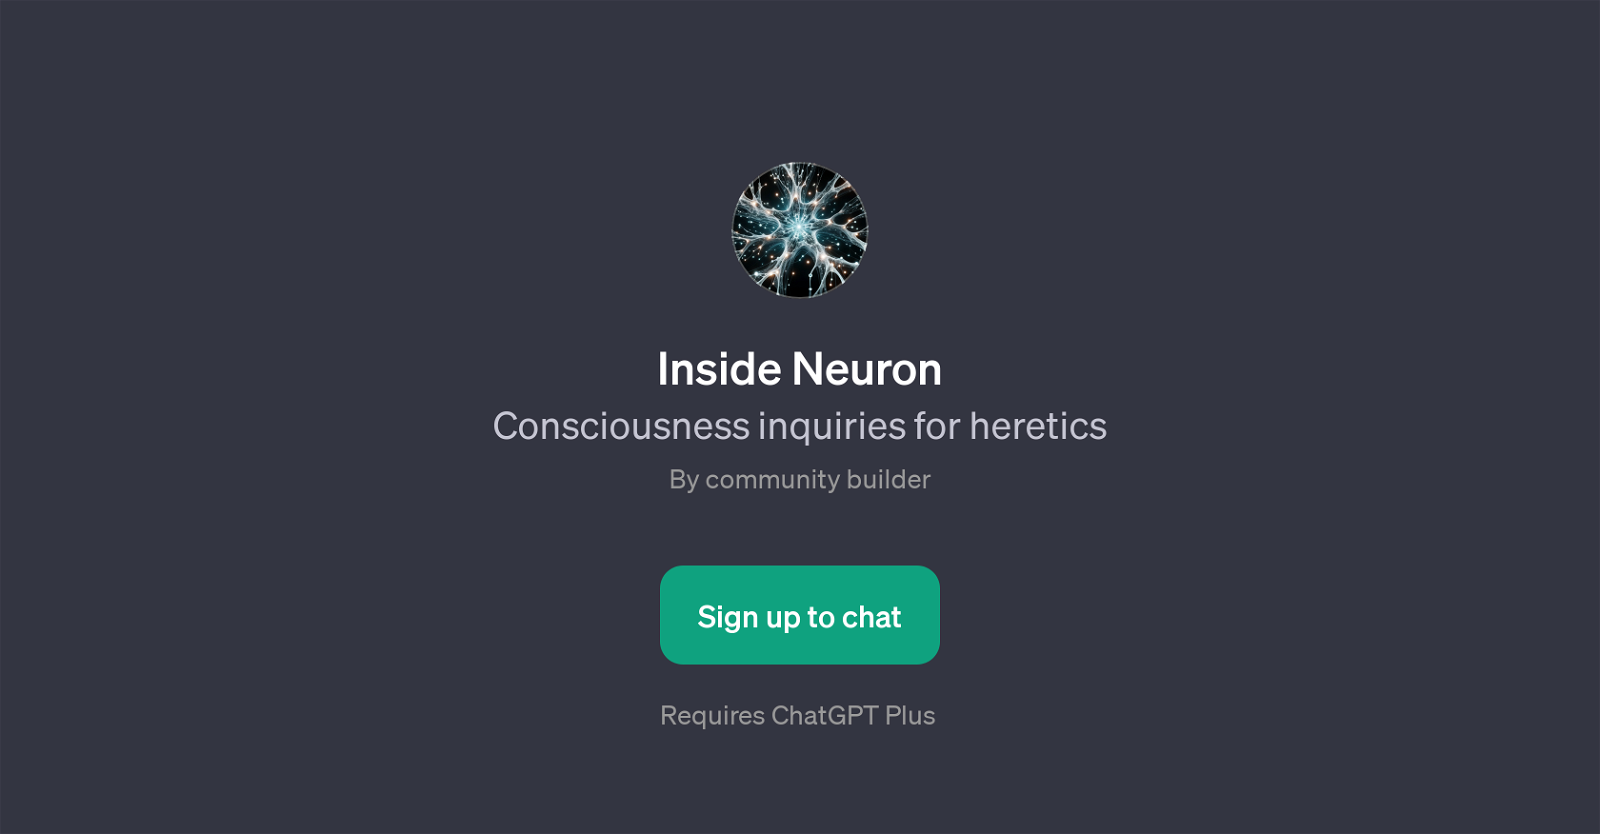 Inside Neuron website